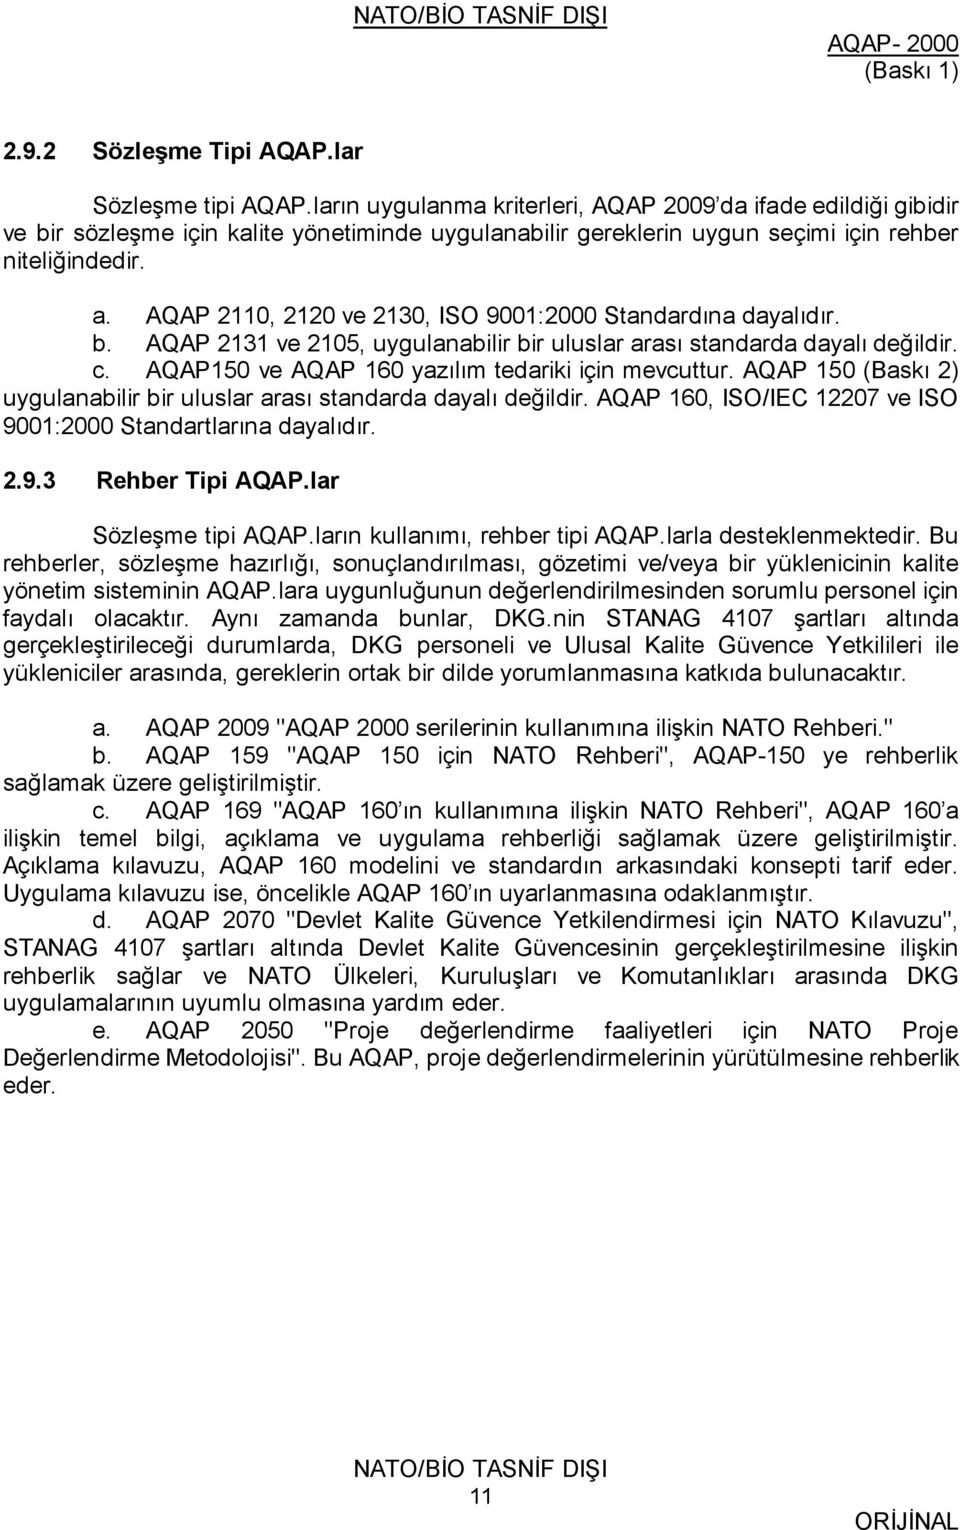 AQAP 2110, 2120 ve 2130, ISO 9001:2000 Standardına dayalıdır. b. AQAP 2131 ve 2105, uygulanabilir bir uluslar arası standarda dayalı değildir. c. AQAP150 ve AQAP 160 yazılım tedariki için mevcuttur.